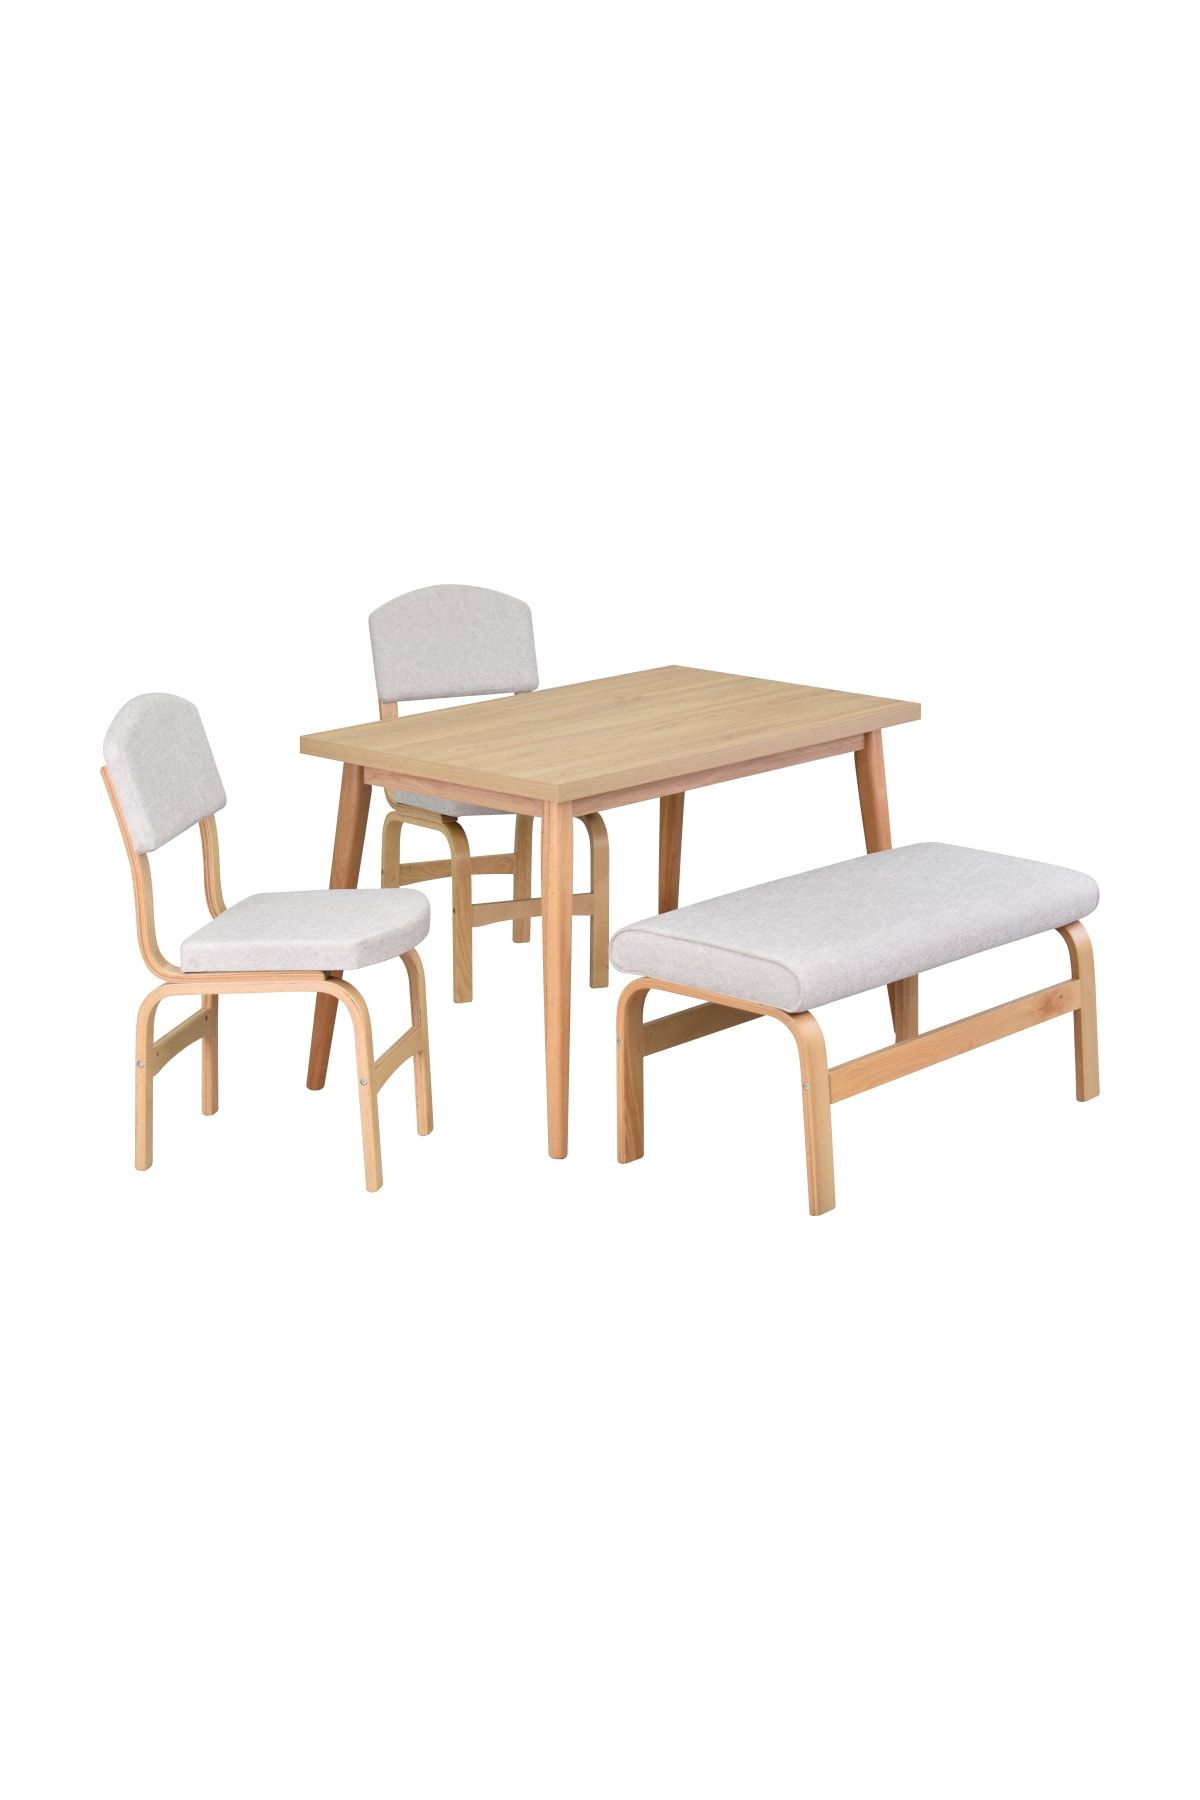 VİLİNZE Ege Sandalye Ve Bank Avanos Ahşap Mdf Mutfak Masası Takımı - 70x120 Cm